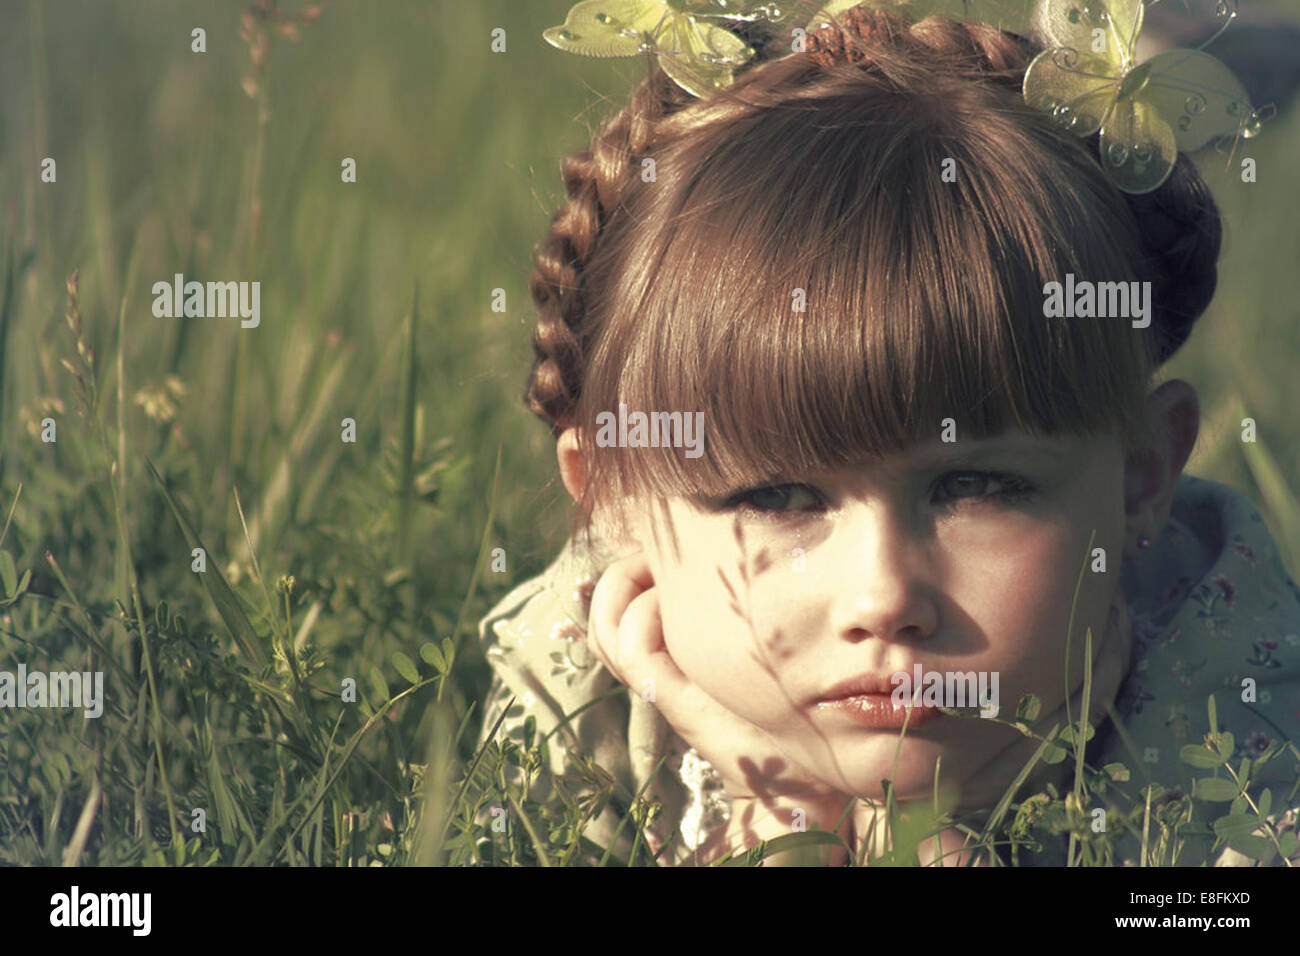 Retrato de una niña tumbada en un prado Foto de stock